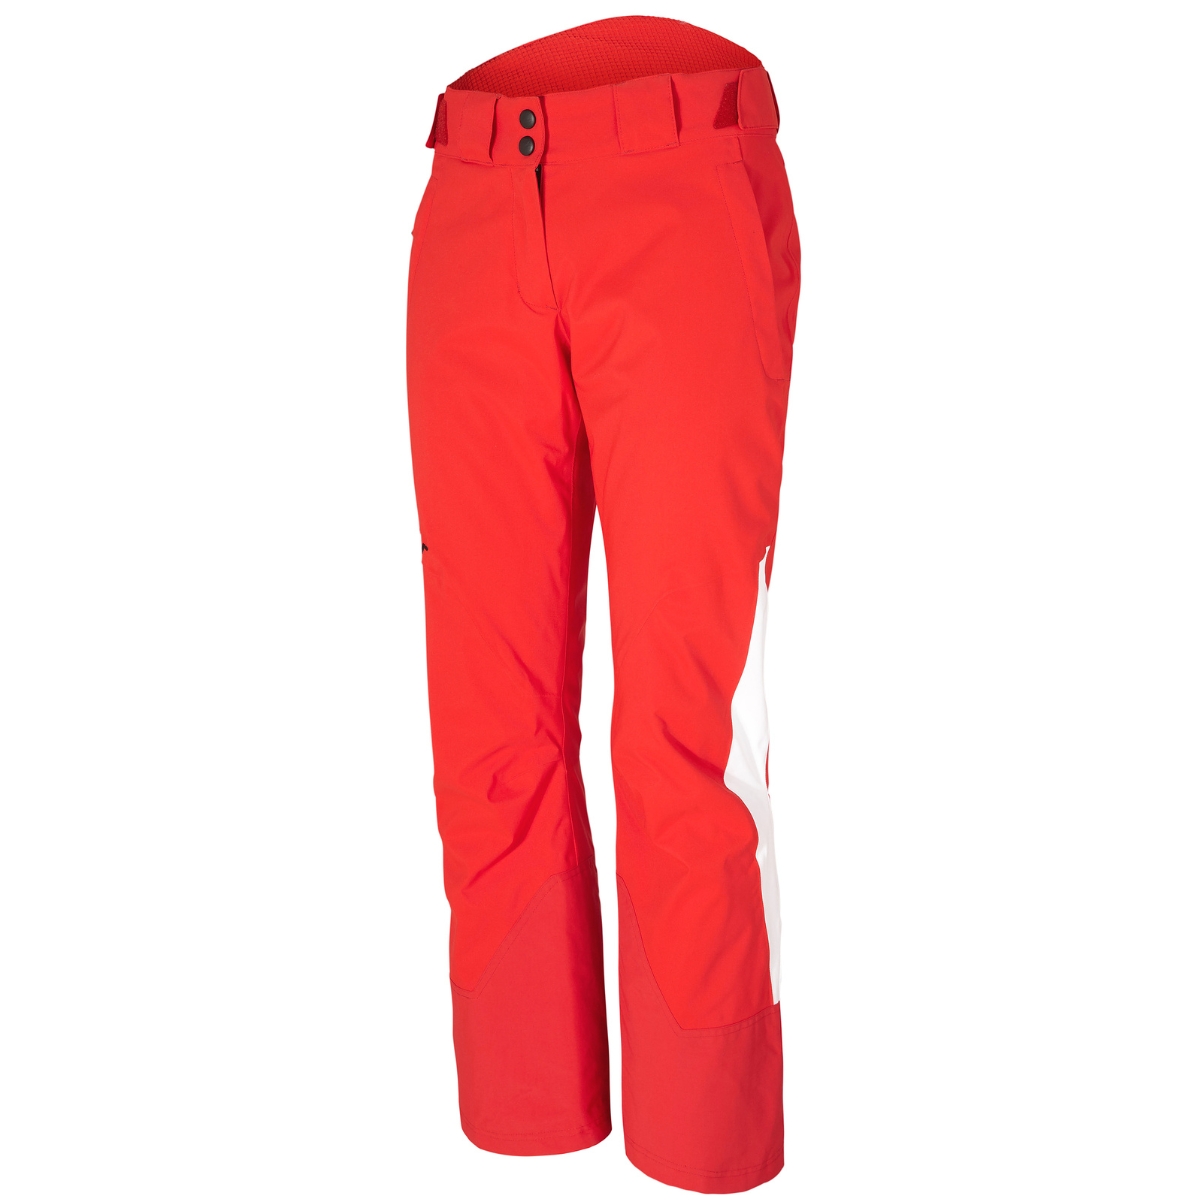 Ziener Damen Skihose Modell Timea Teamwear Art. 194933-88801 red white